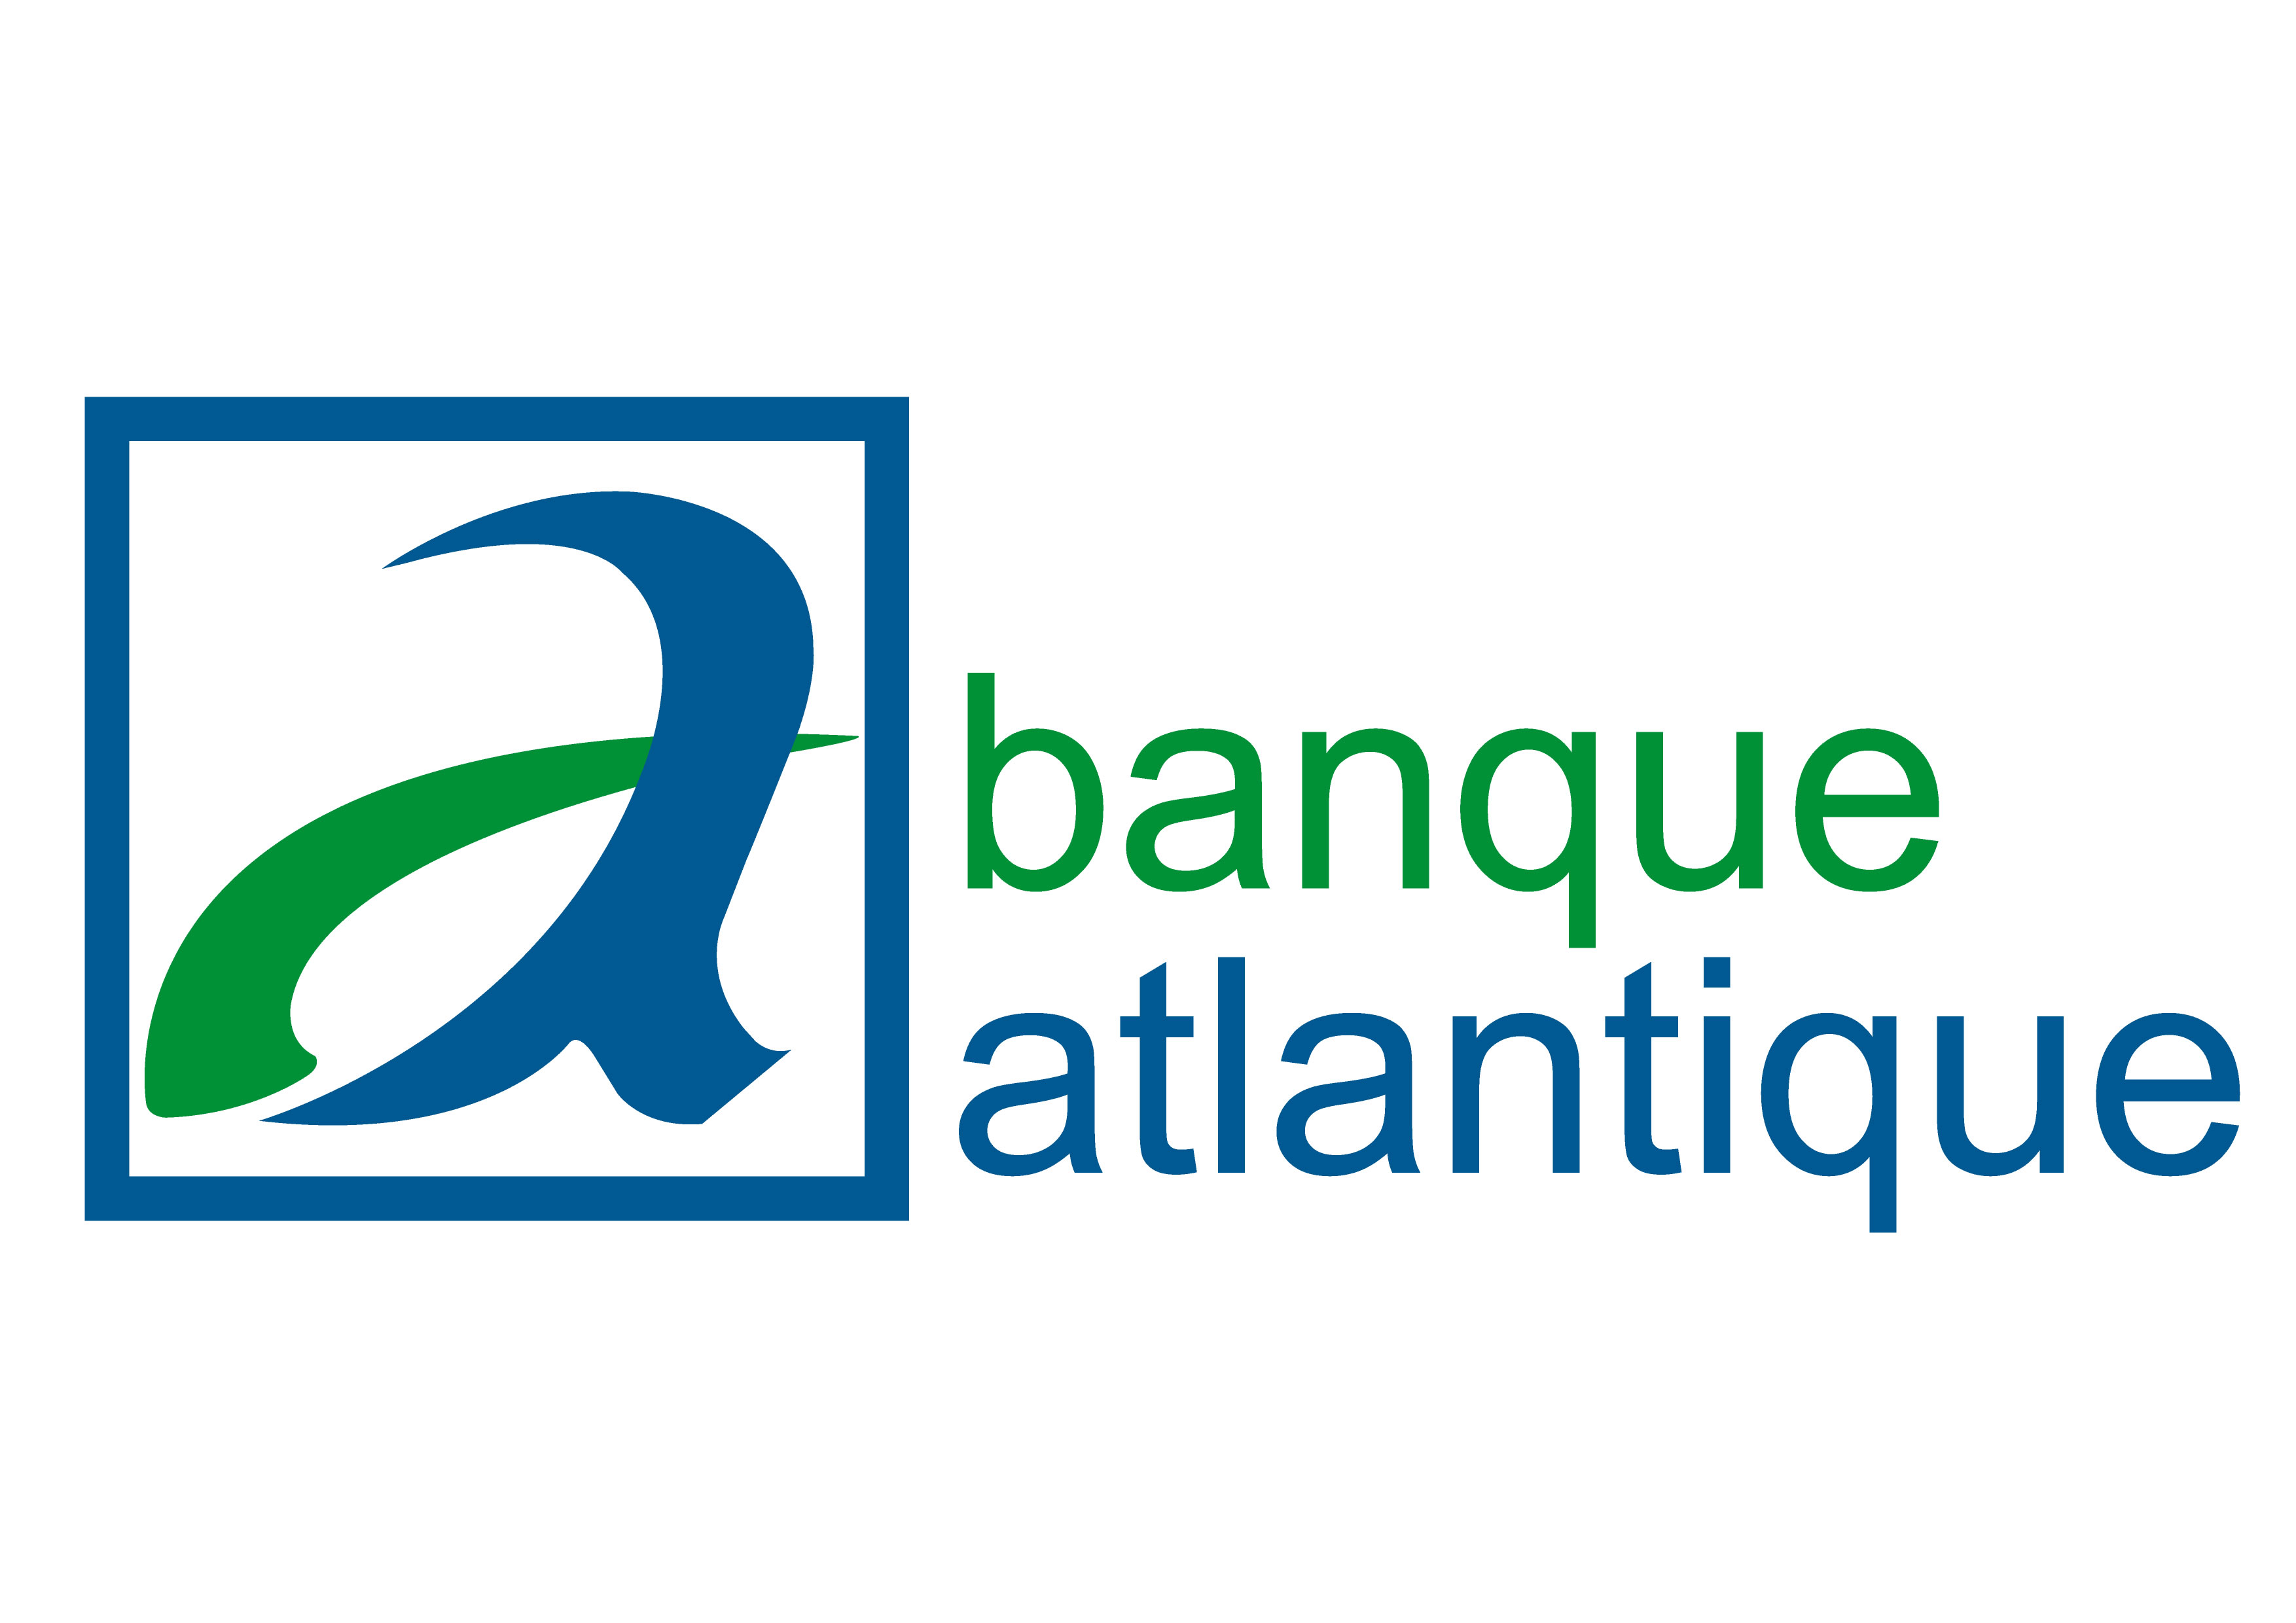 La Banque atlantique Sénégal, en partenariat avec la Bcp et l'Arserem, lance une offre inédite de bi-bancaristaion destinée à la Diaspora sénégalaise au Maroc